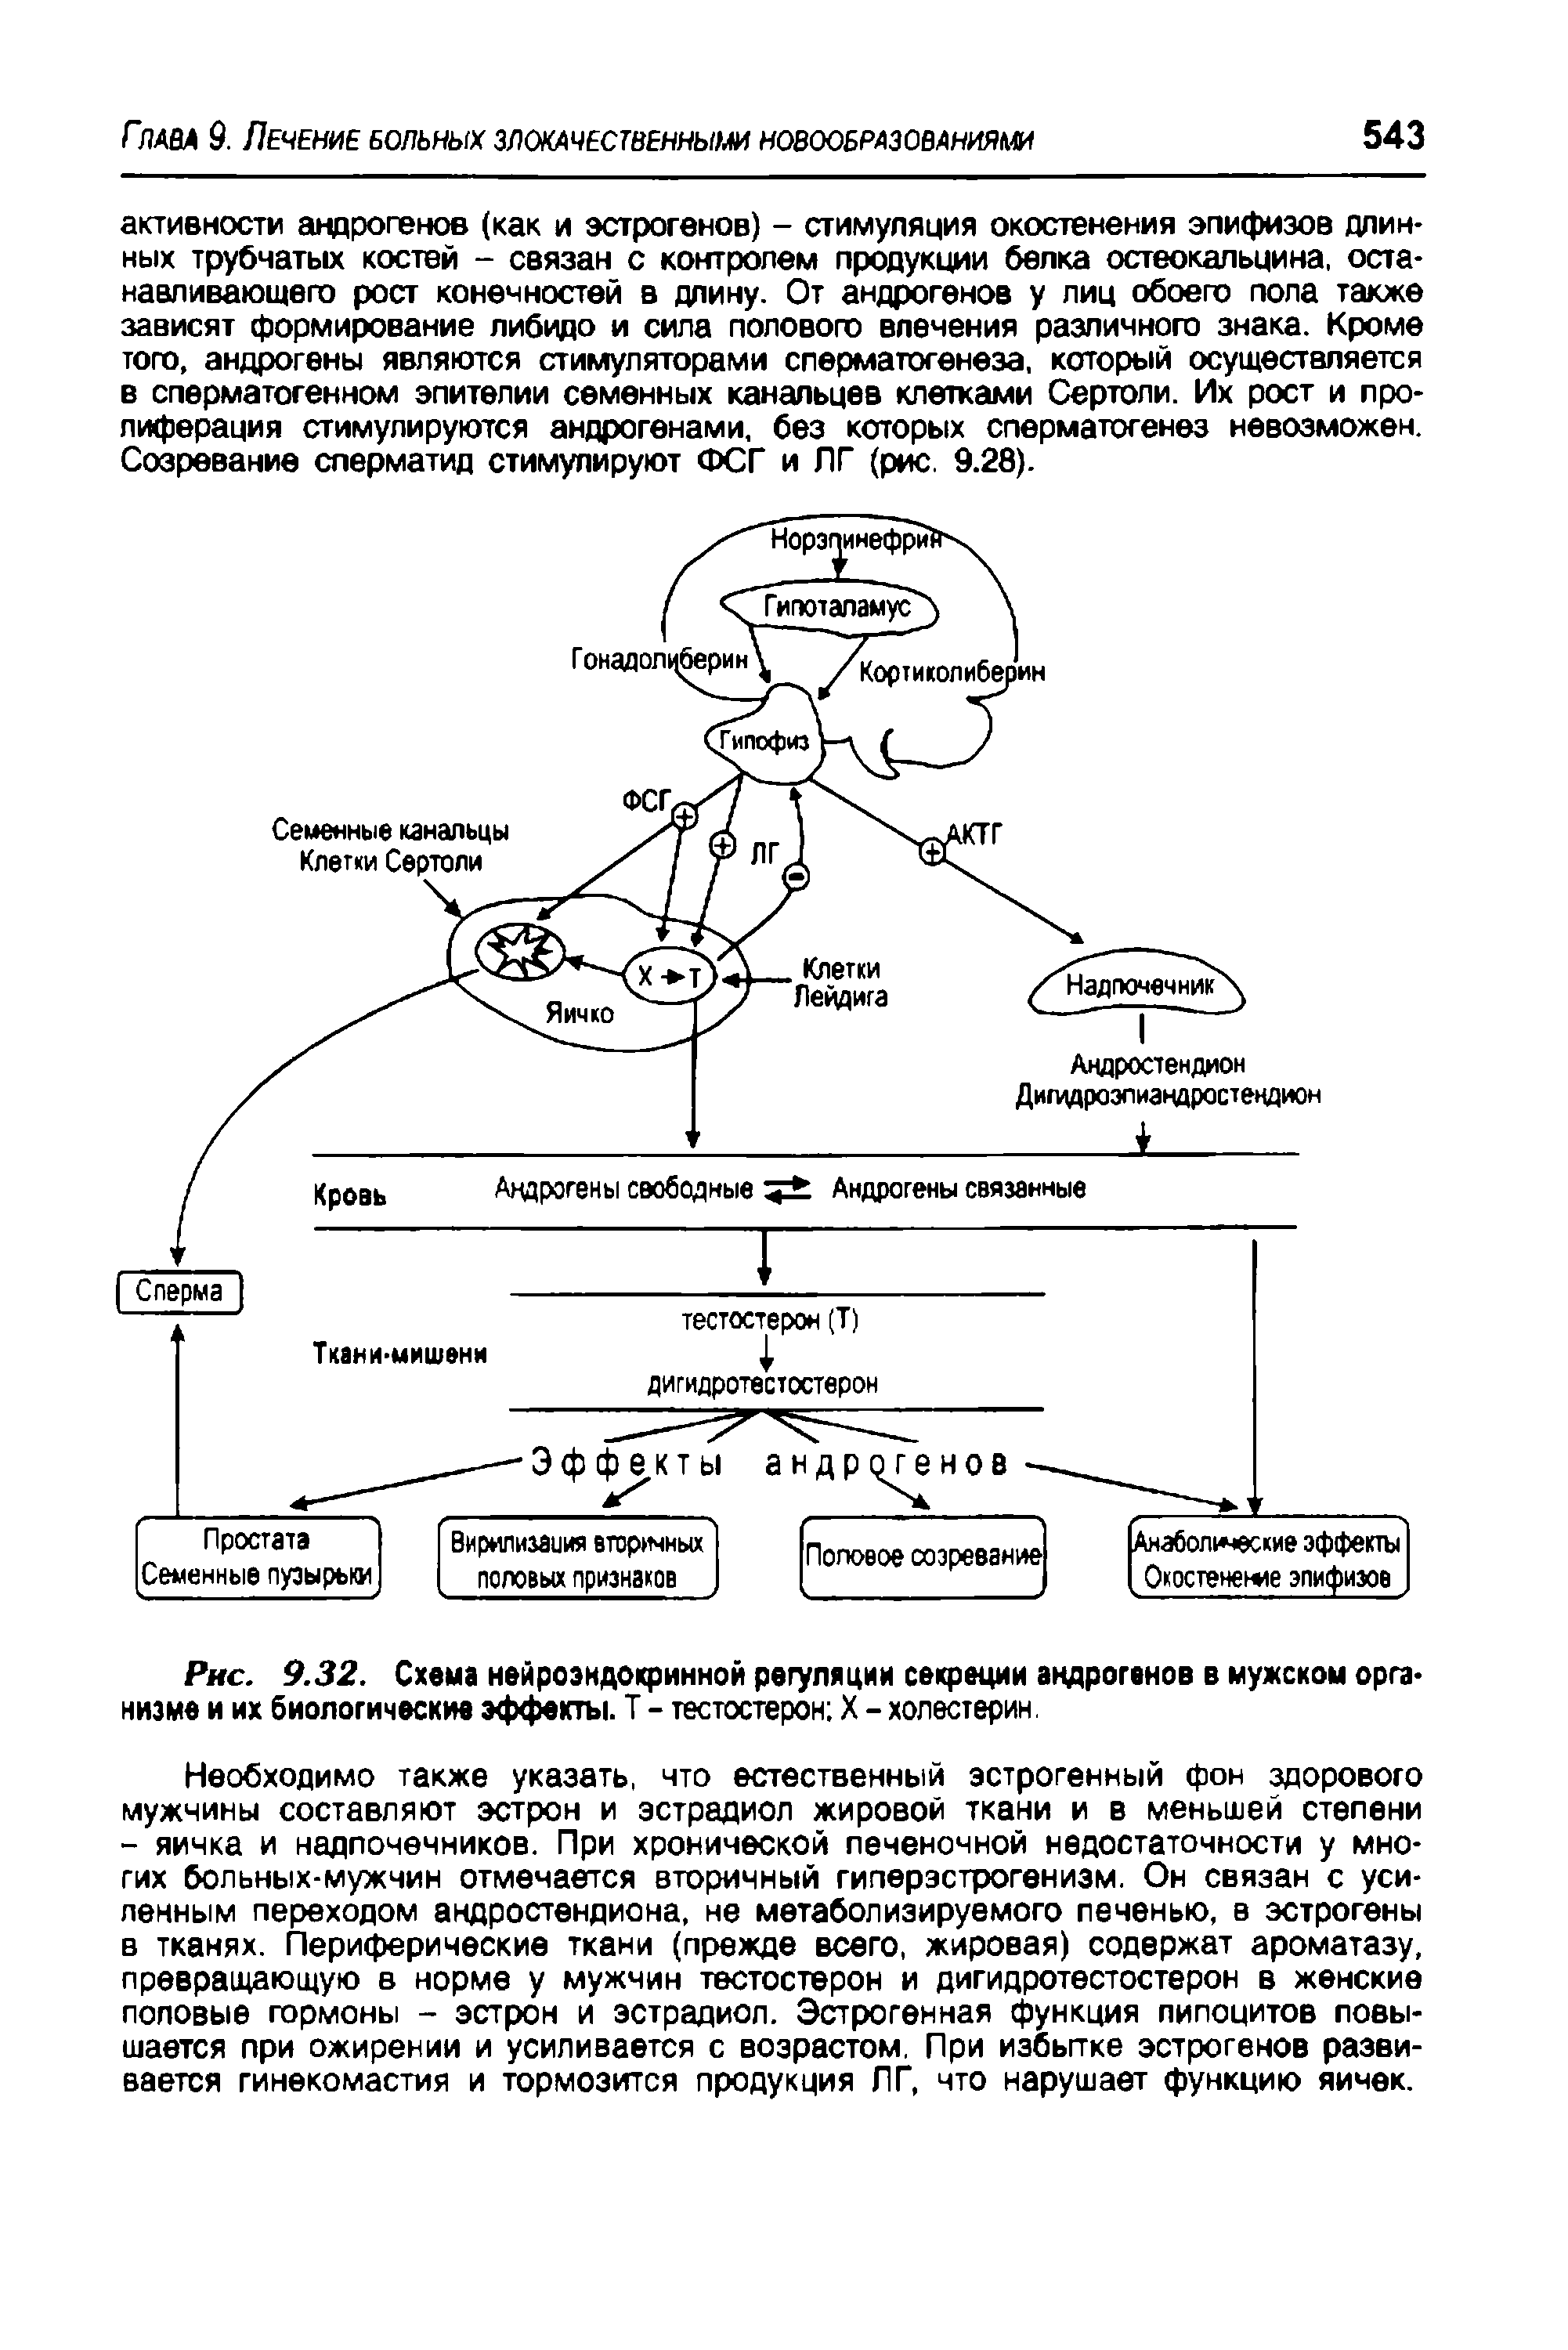 Рис. 9.32. Схема нейроэндокринной регуляции секреции андрогенов в мужском организме и их биологические эффекты. Т - тестостерон X - холестерин.